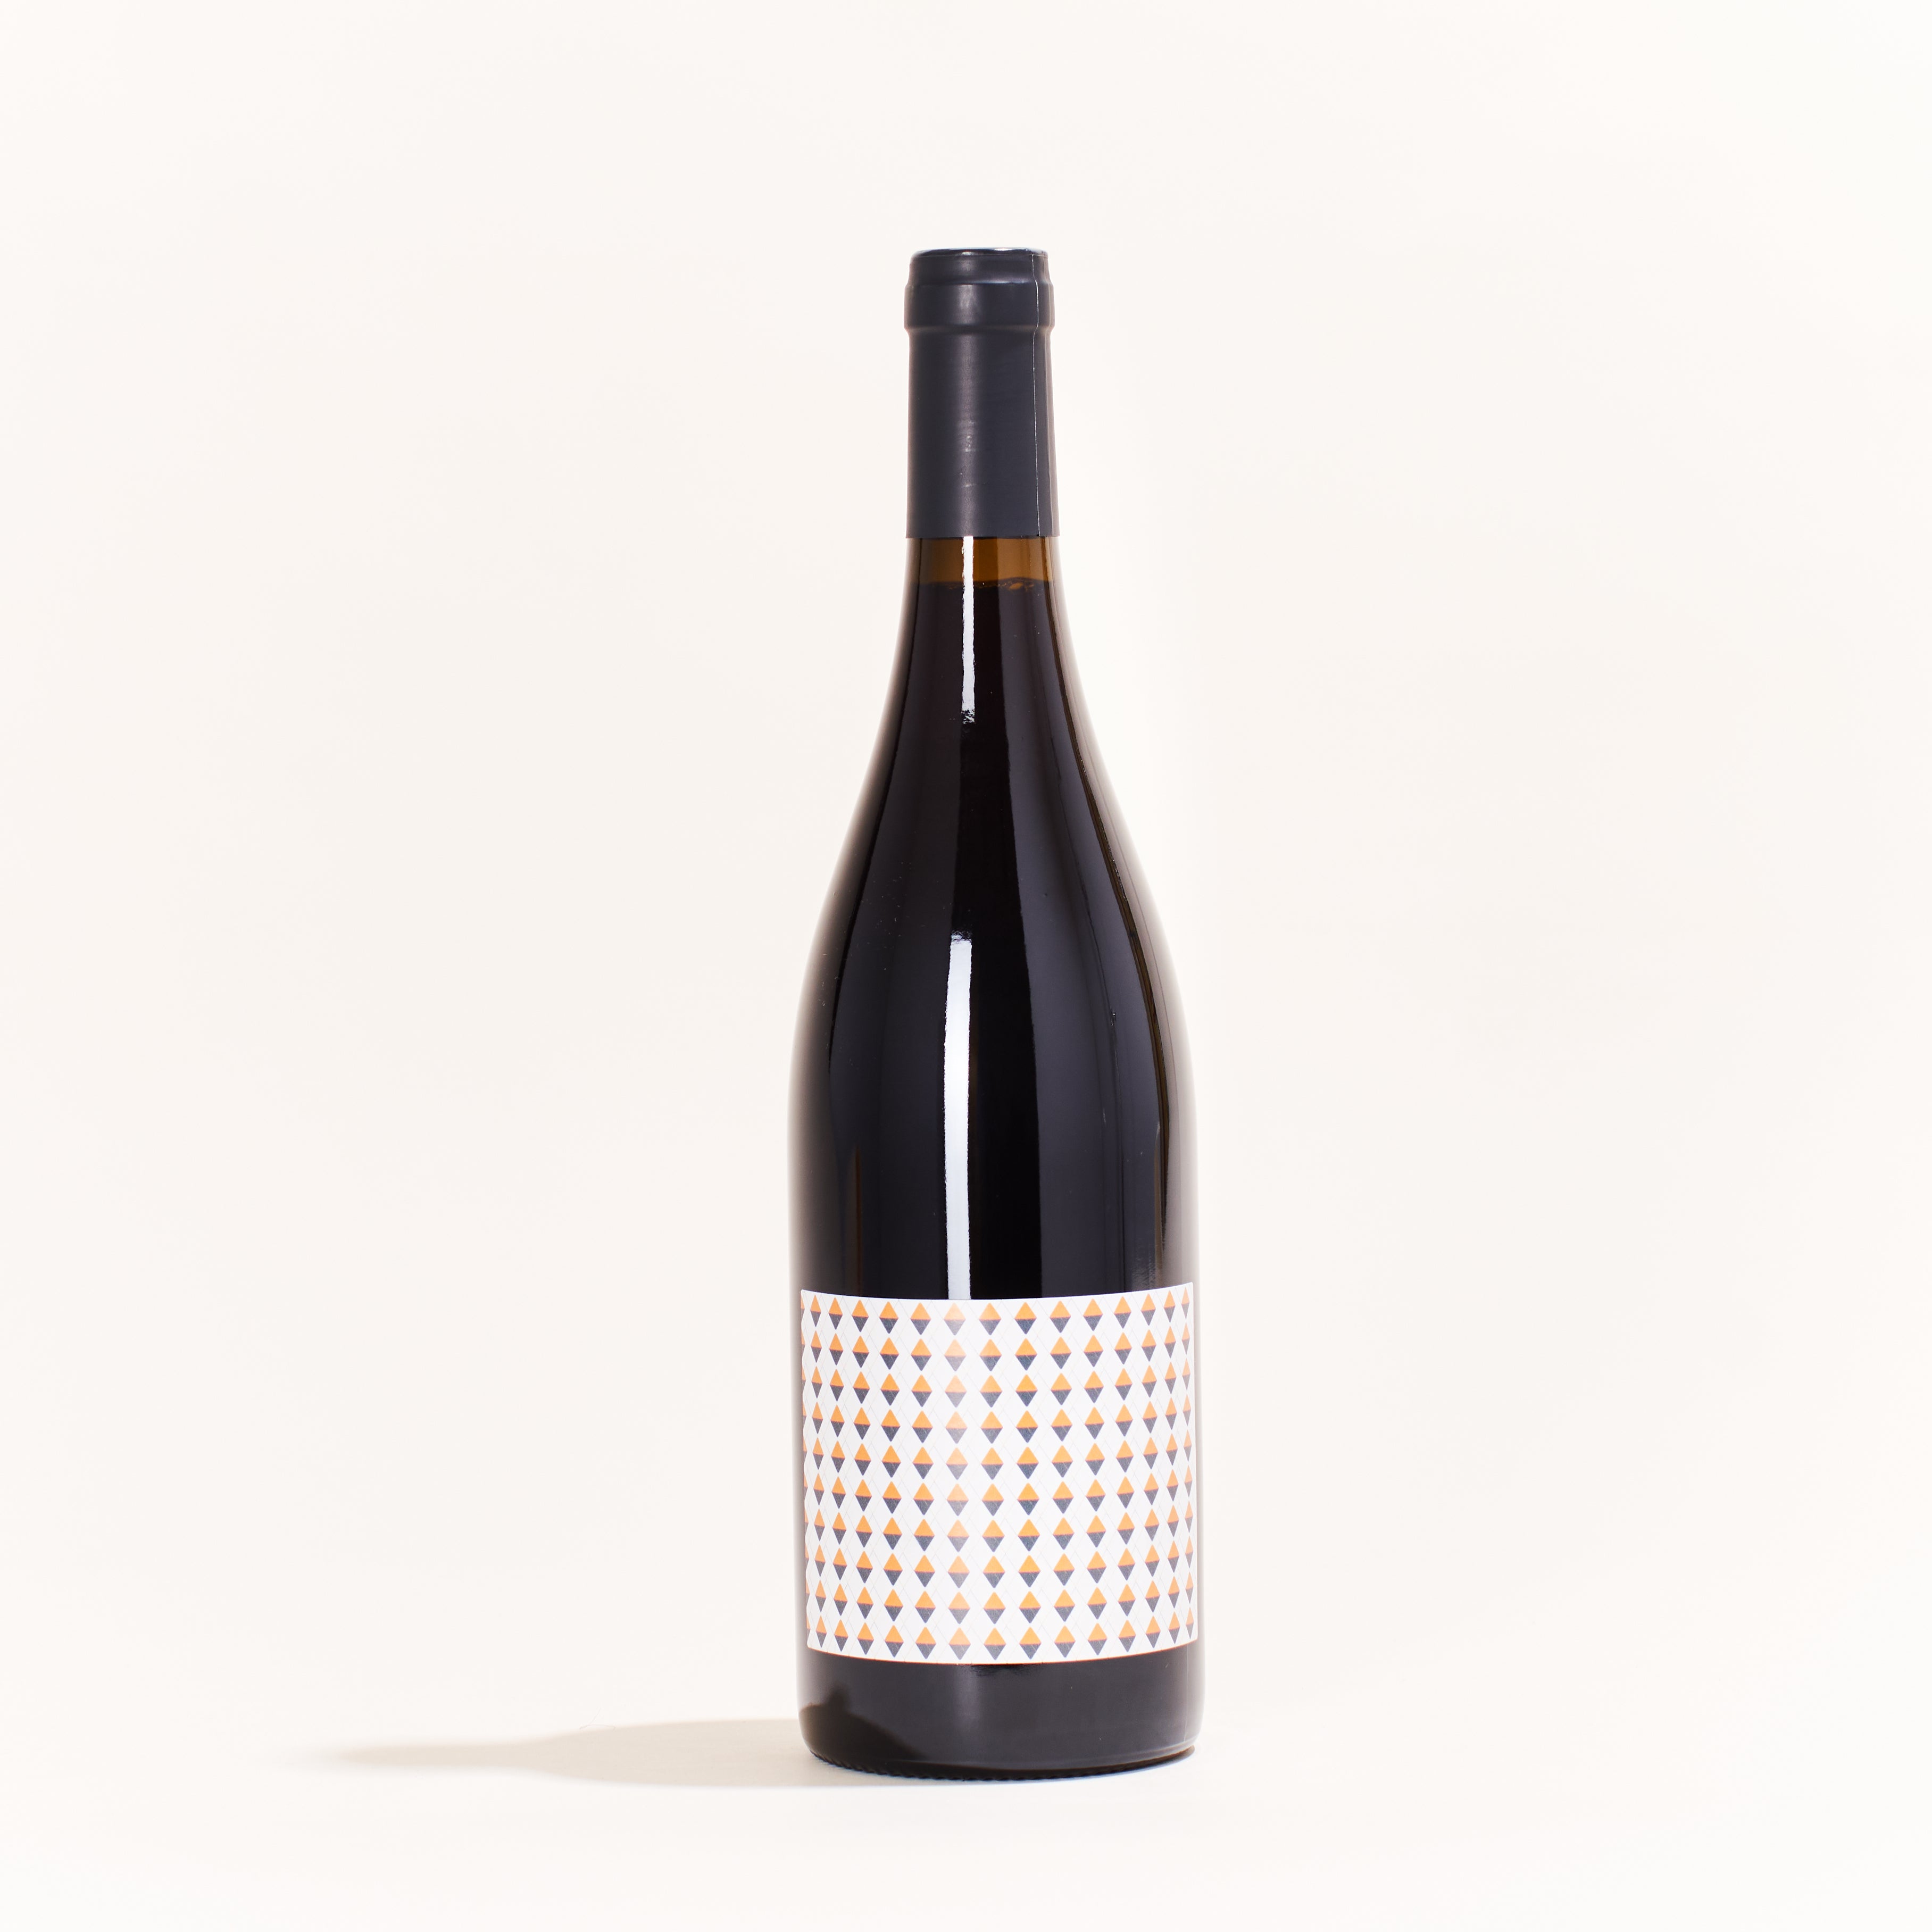 2P Production Mix Merlot, Loin de l'Oeil  natural red wine Gaillac France